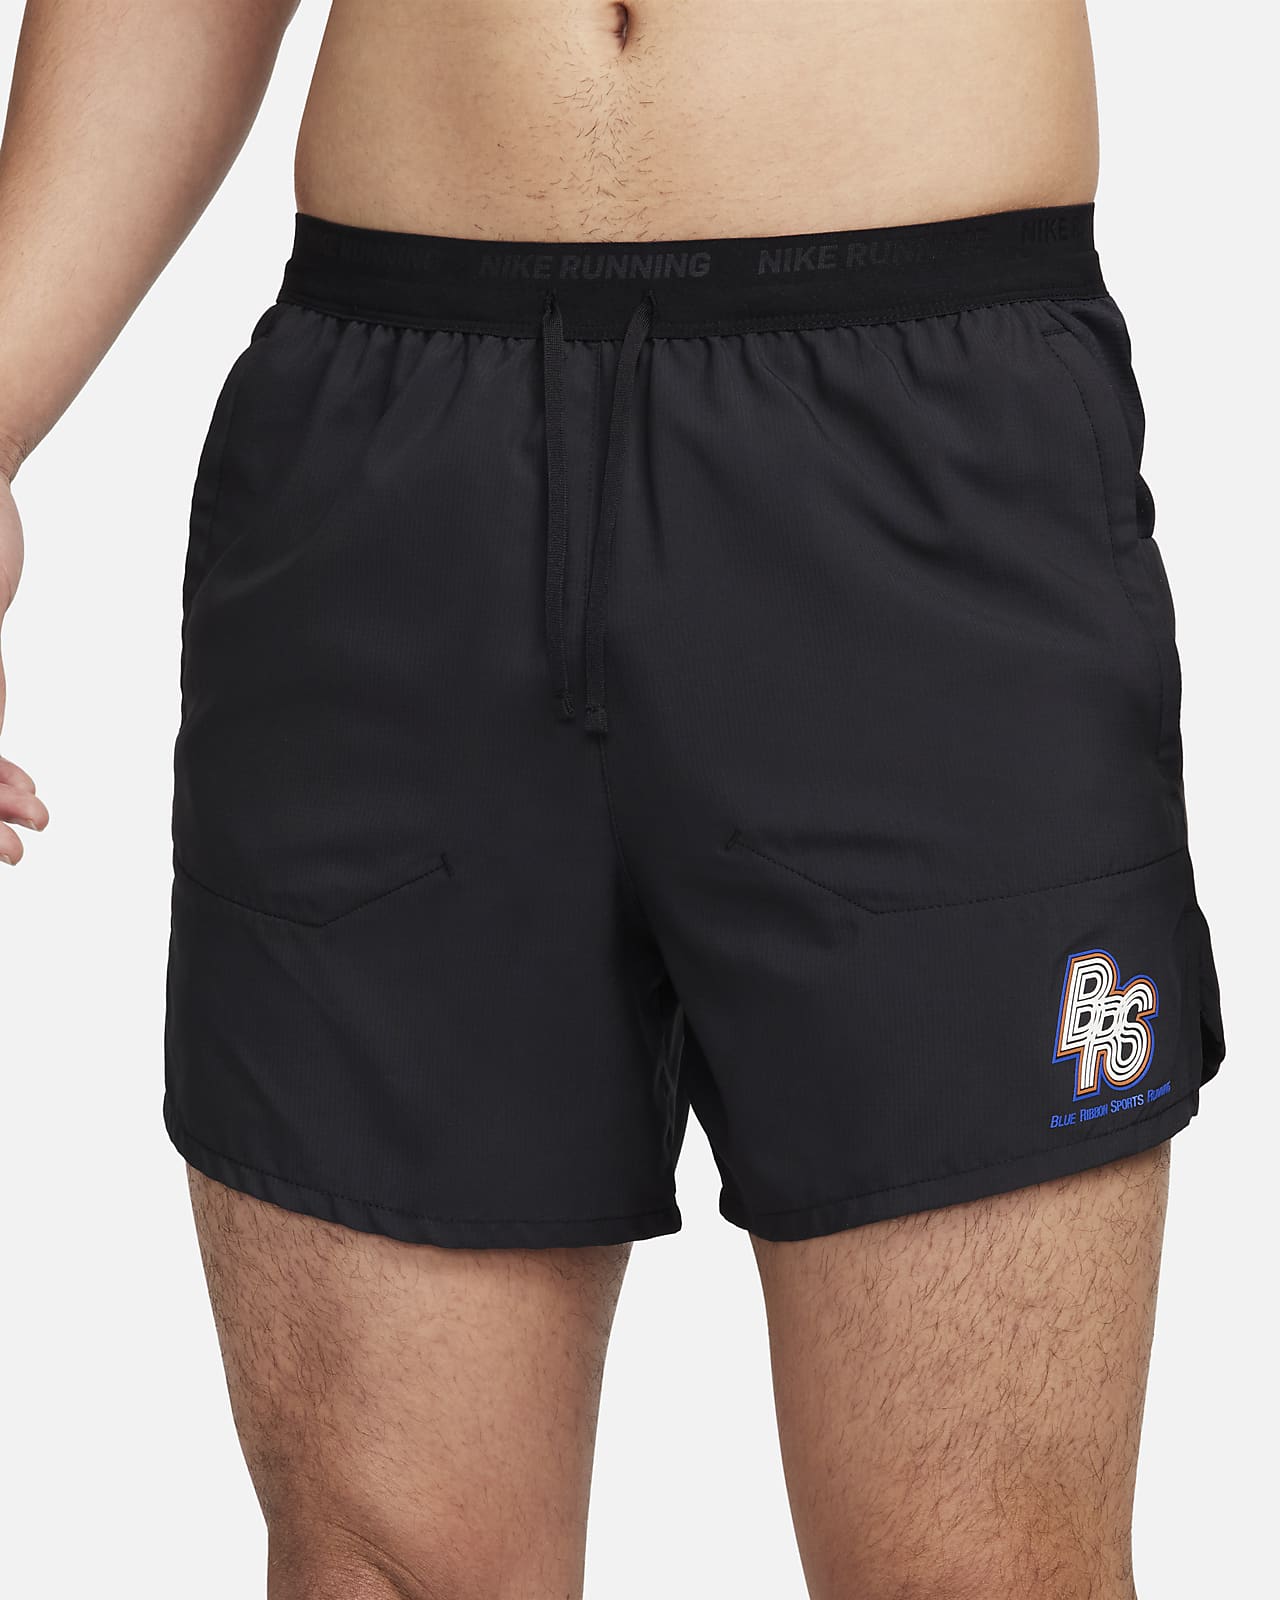 Nike 9 Distance Running Shorts Built In Underwear Black 642813-013